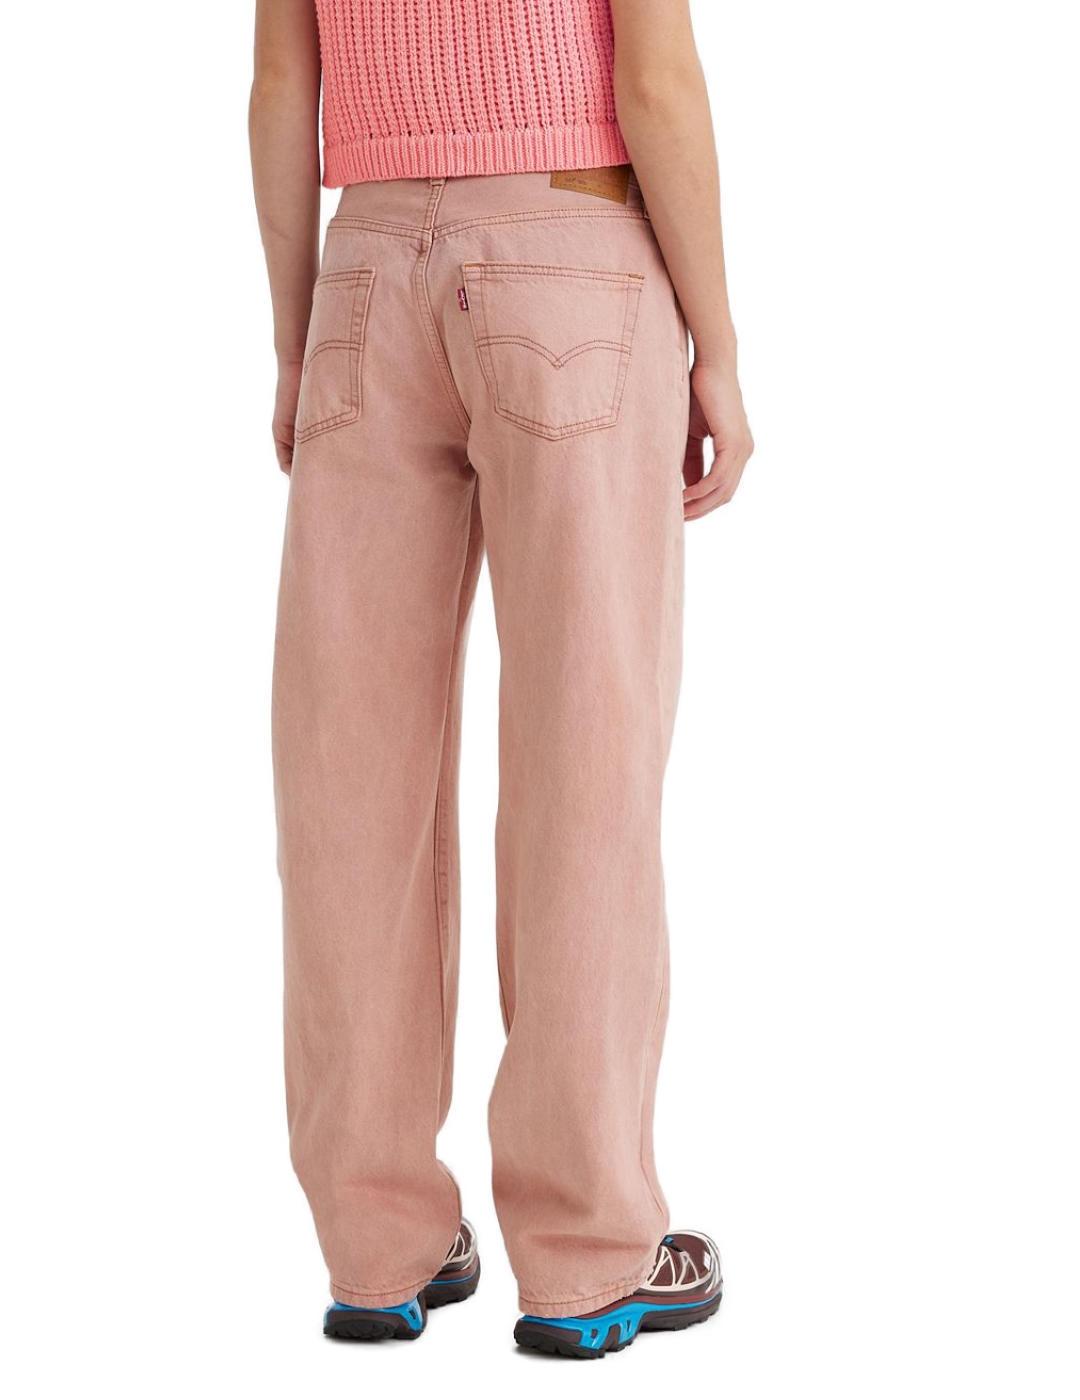 Pantalón Vaquero Straigh Levi´s 501 rosa desgastado de mujer